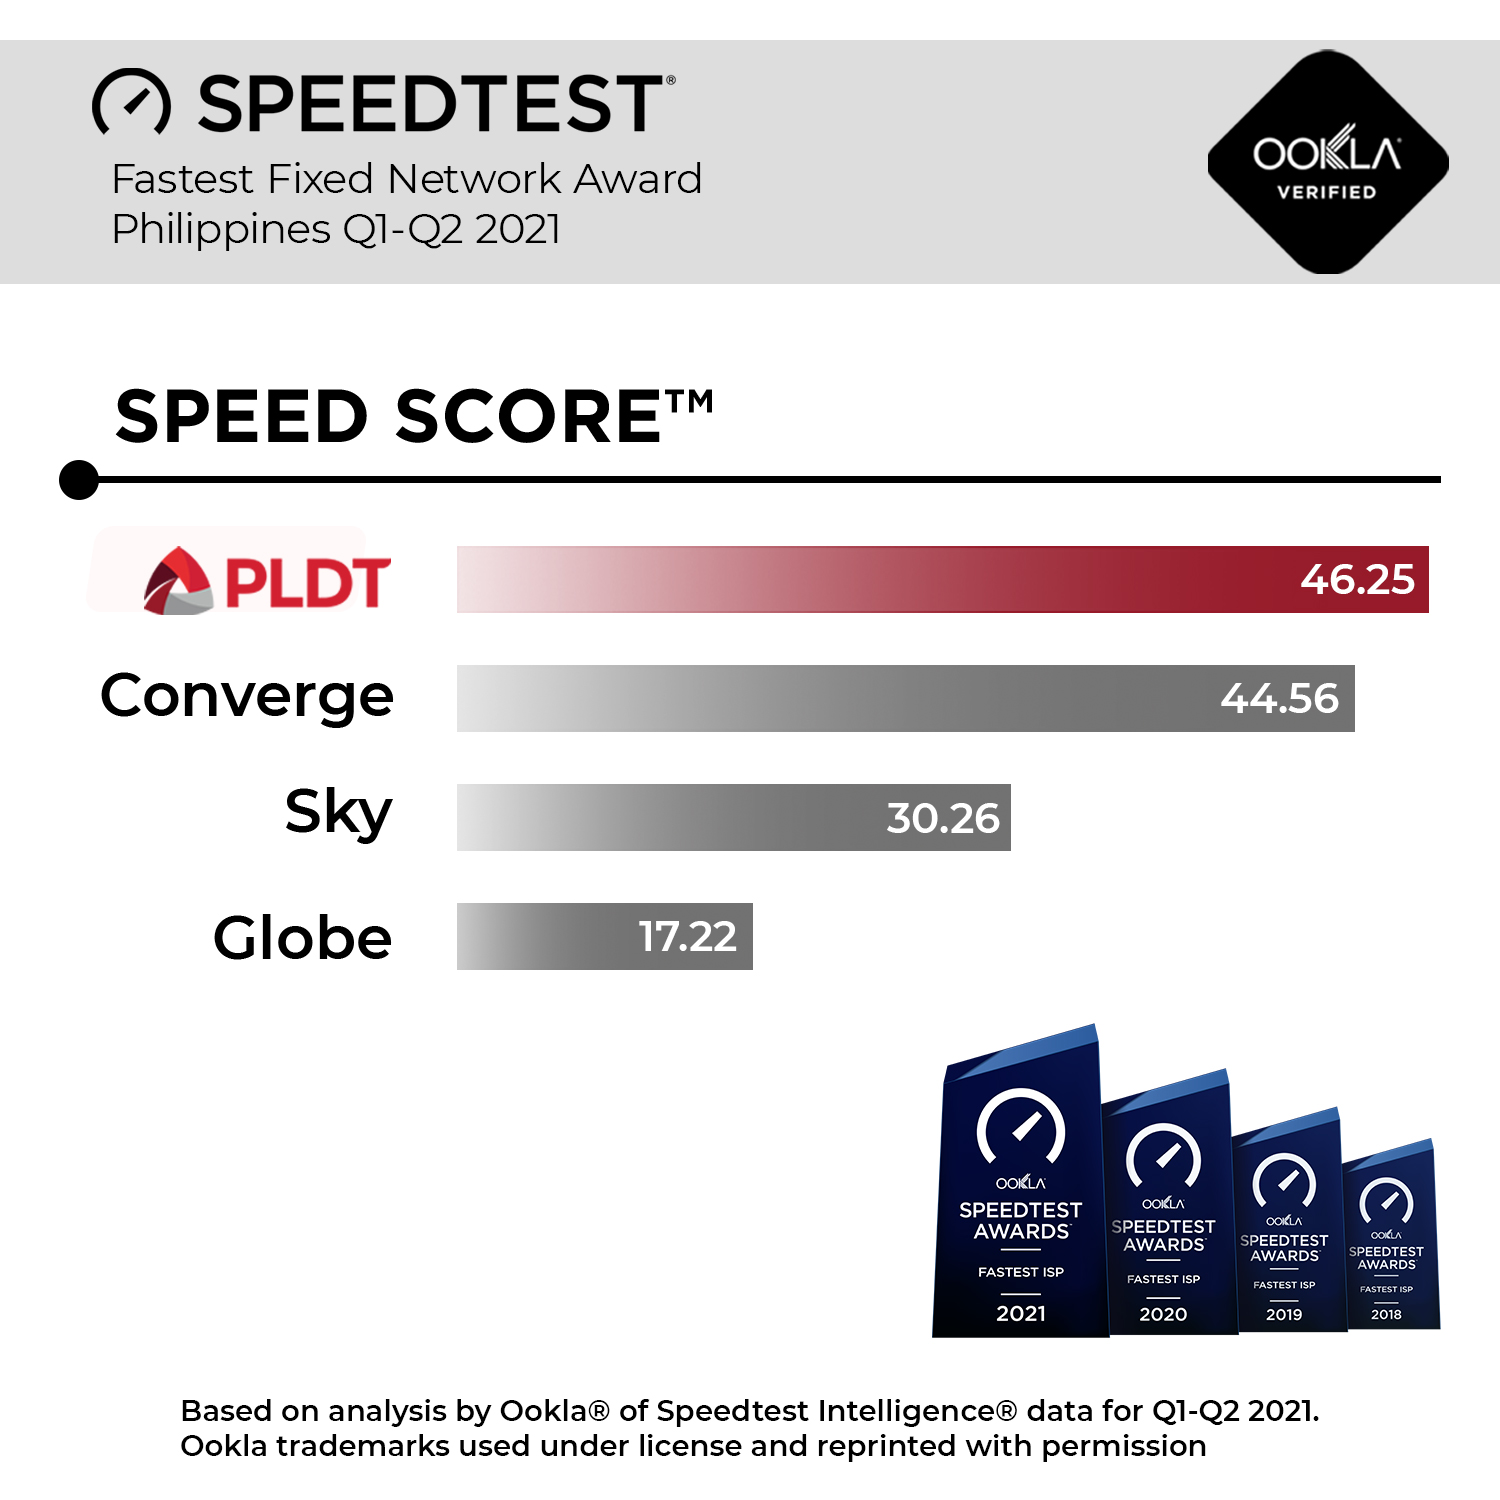 PLDT speed score 1